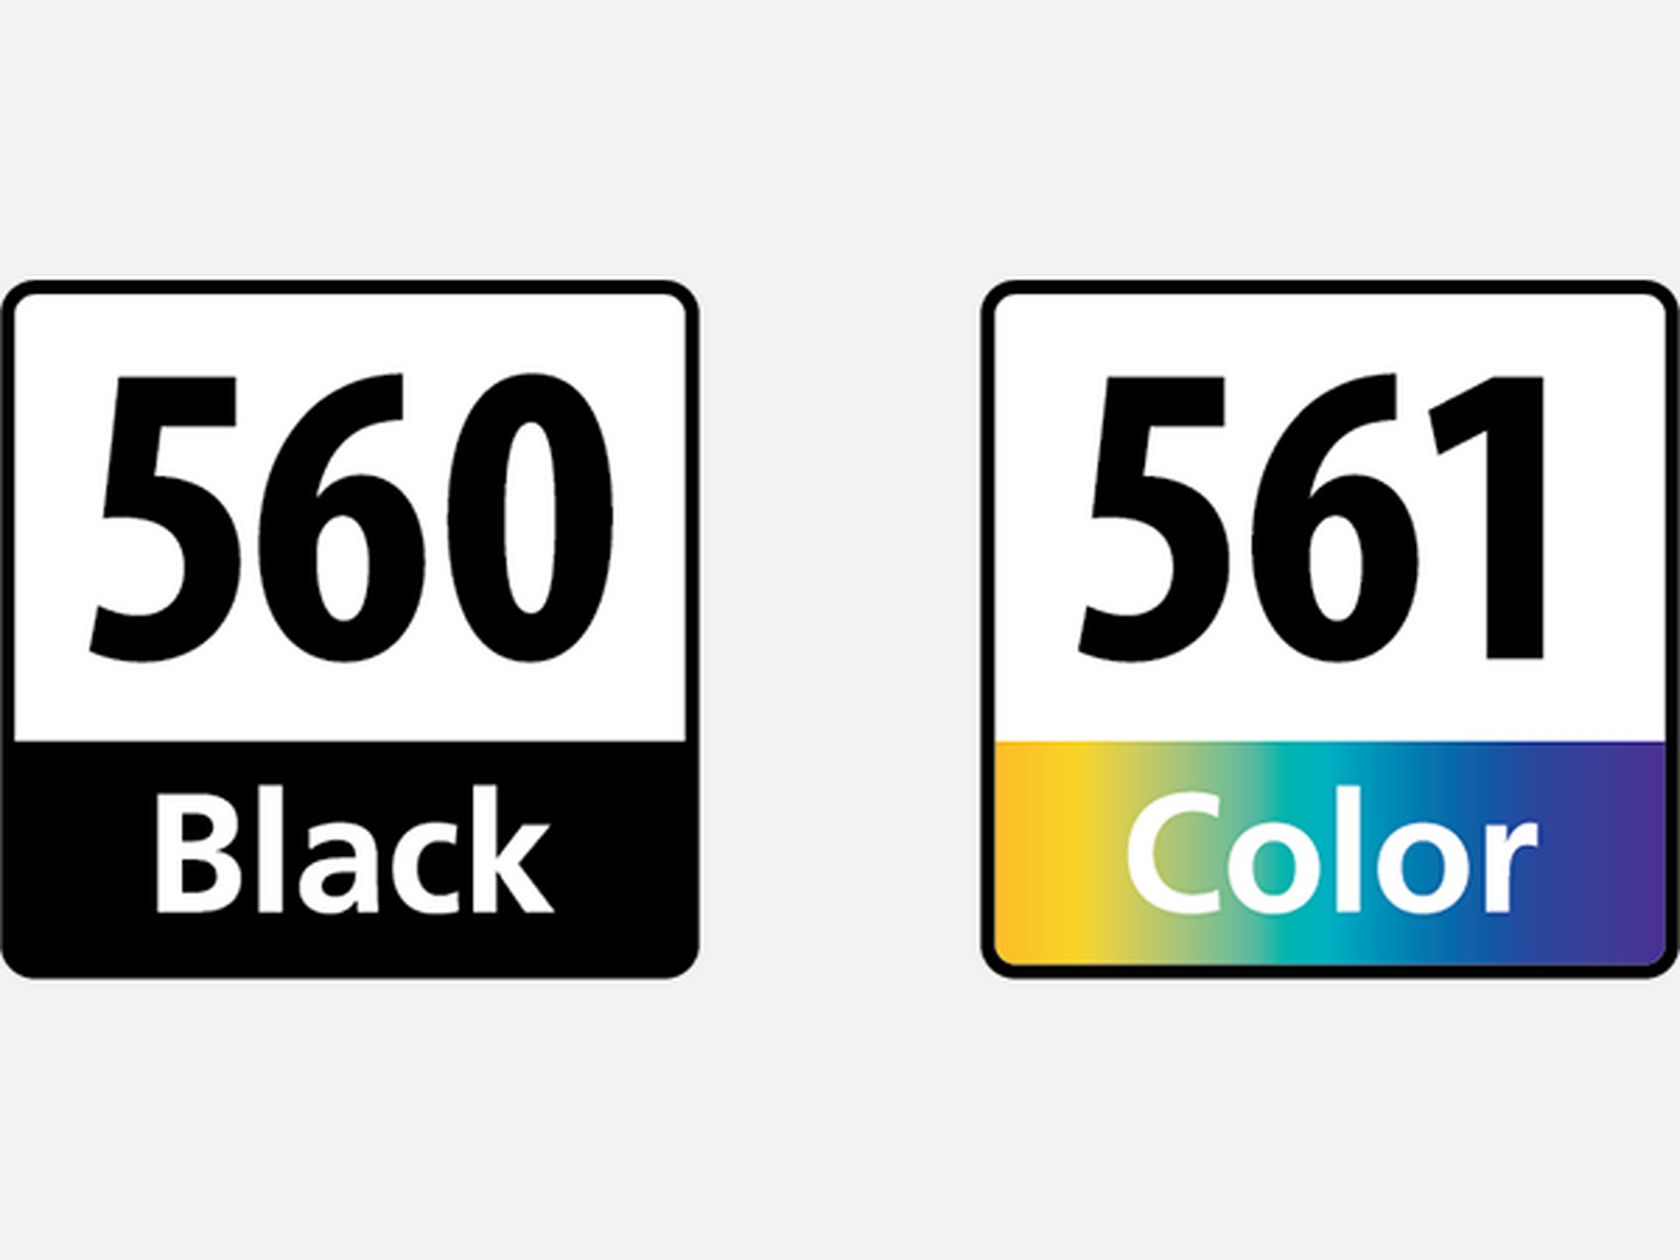 Multipack Canon de cartouches d'encre noire PG-560 et couleur CL-561 dans  Fin de Série — Boutique Canon Suisse